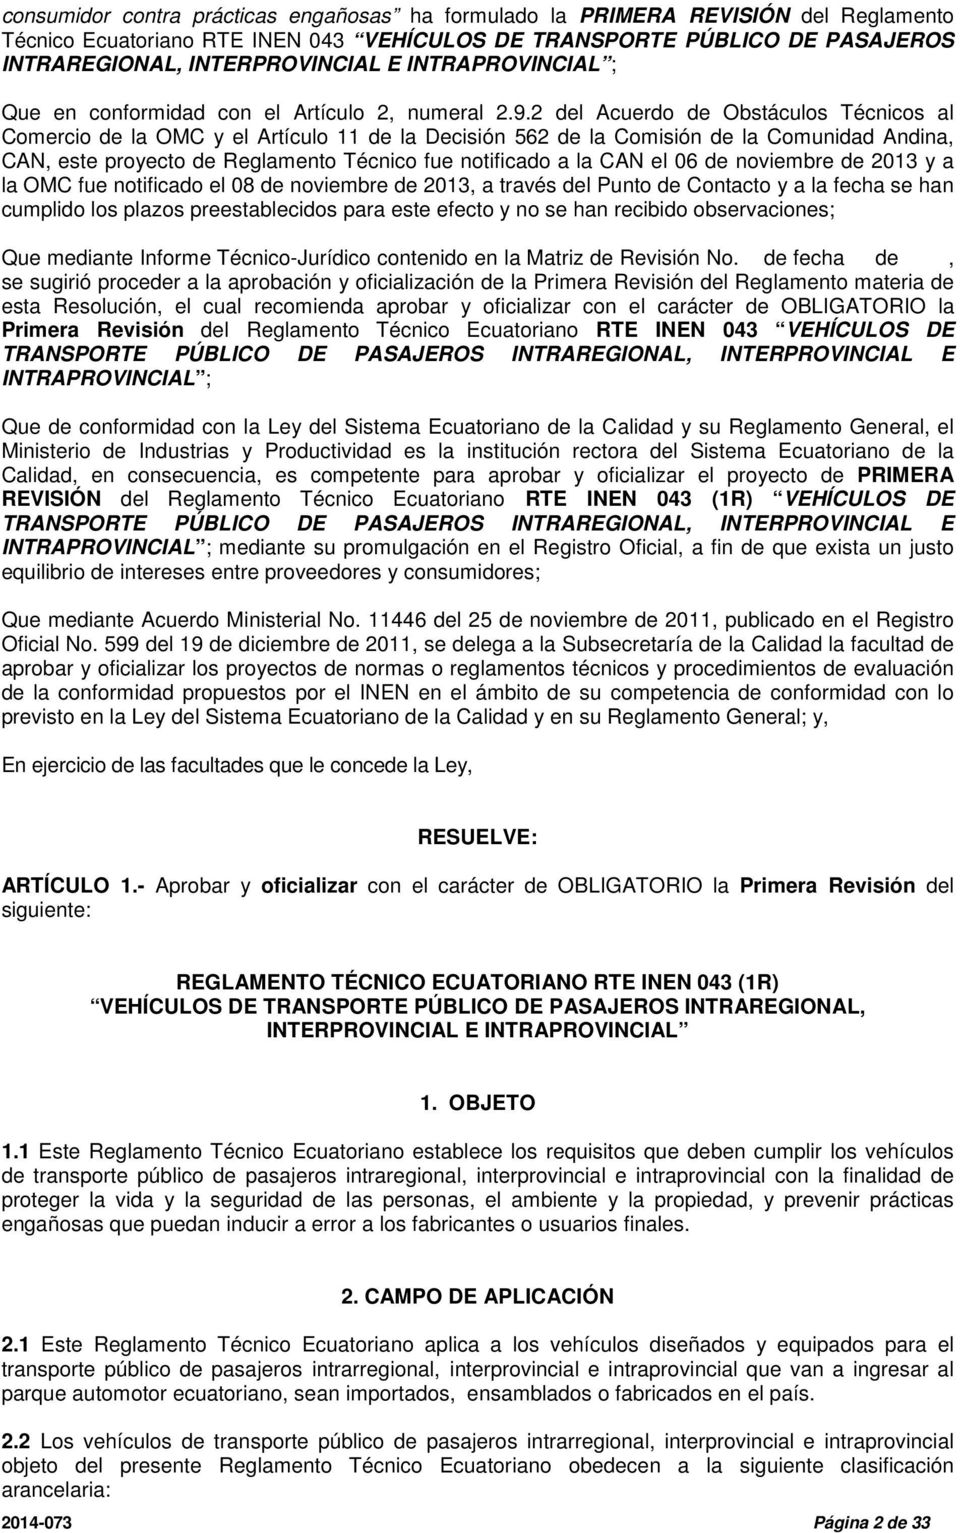 2 del Acuerdo de Obstáculos Técnicos al Comercio de la OMC y el Artículo 11 de la Decisión 562 de la Comisión de la Comunidad Andina, CAN, este proyecto de Reglamento Técnico fue notificado a la CAN